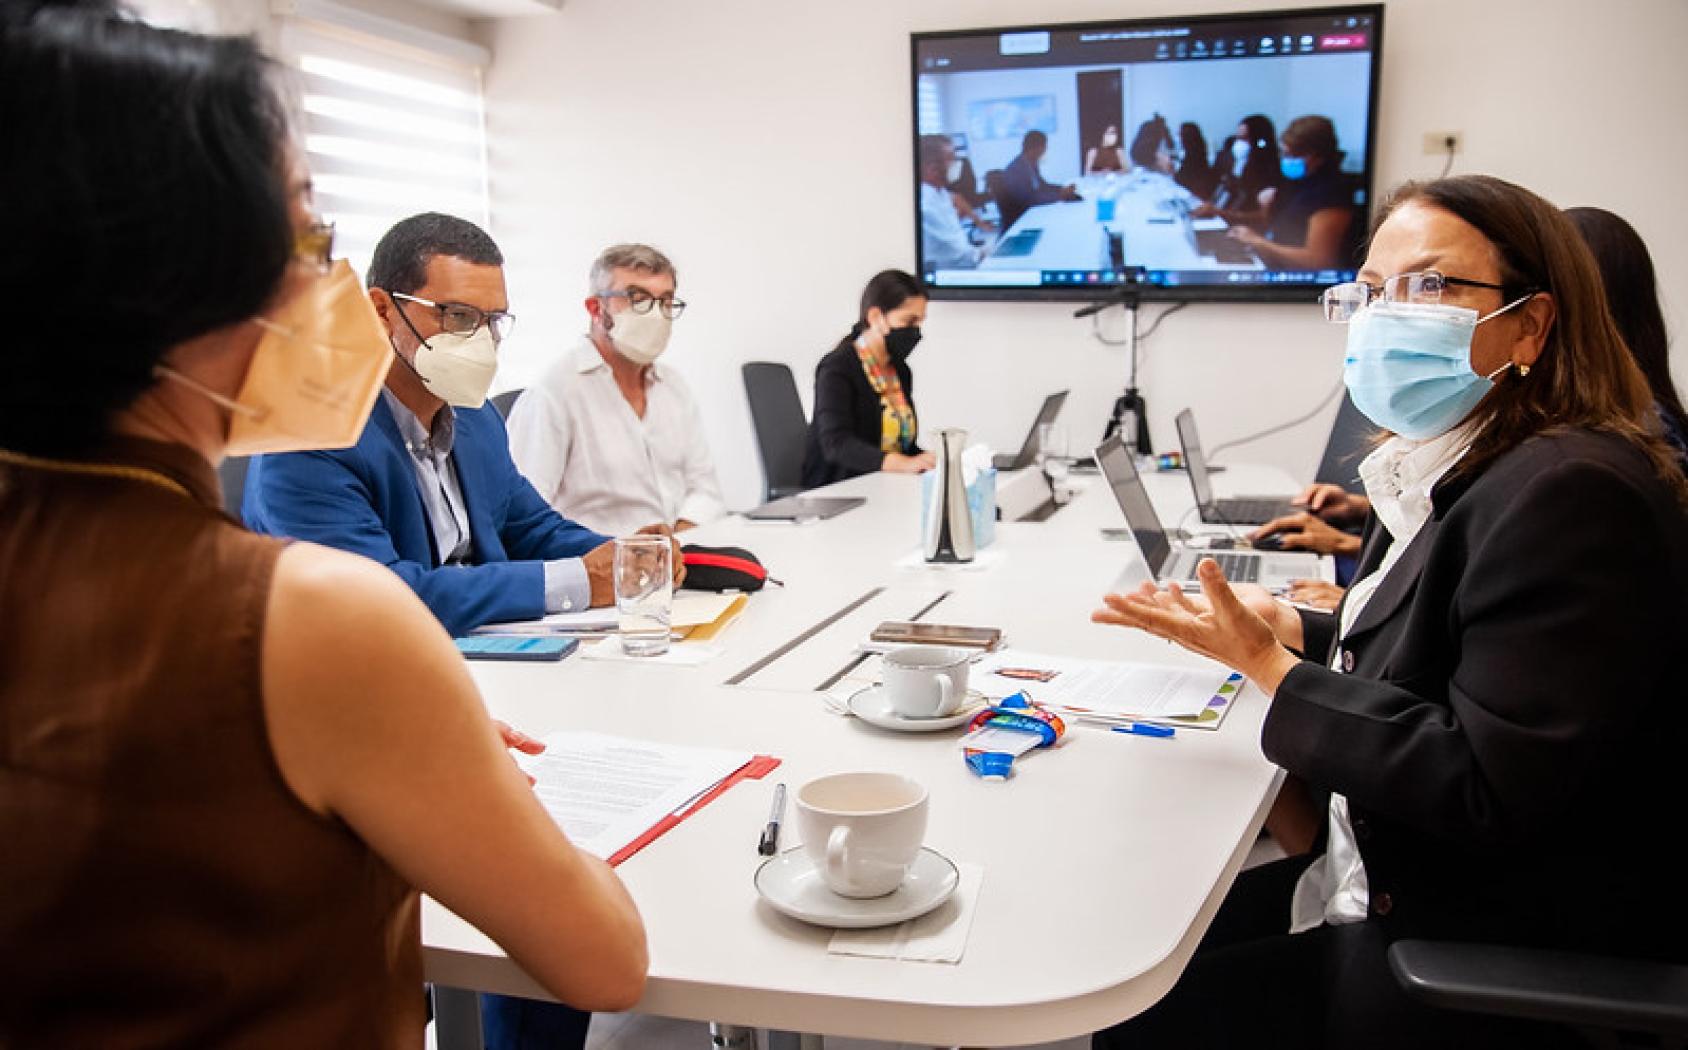 Miembros del personal de Naciones Unidas en una reunión de trabajo con una videoconferencia en el fondo.